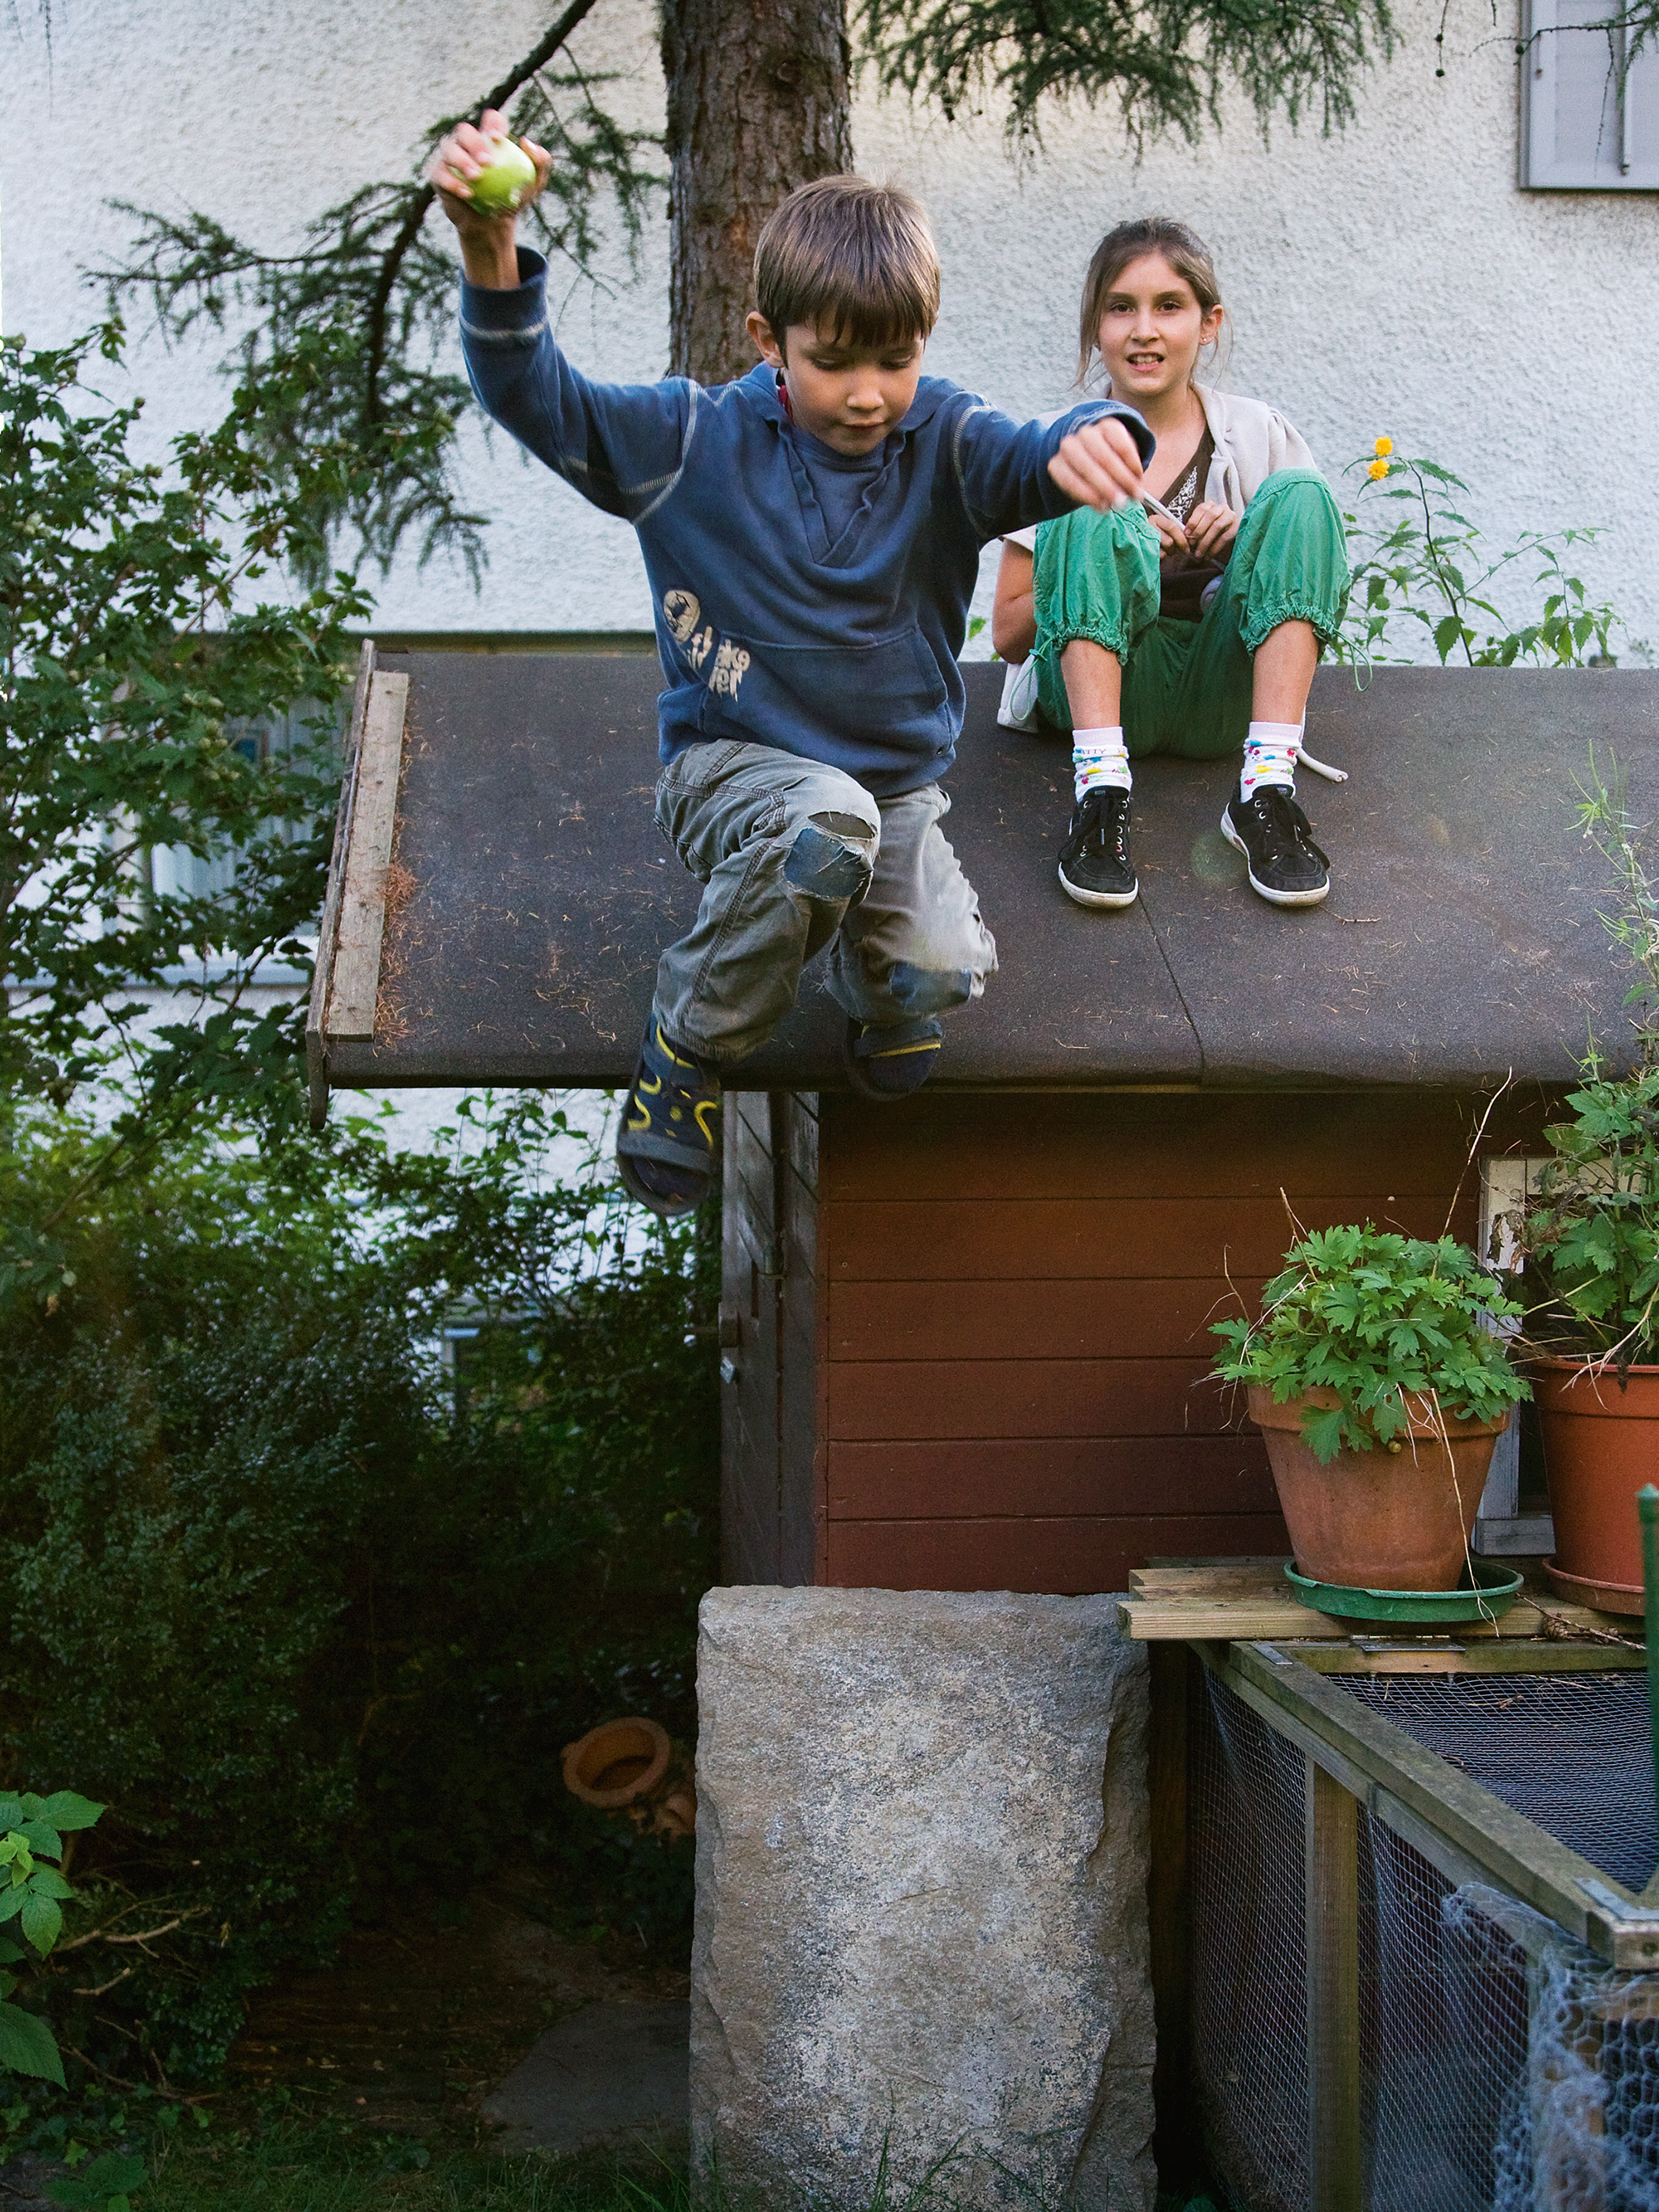 Junge springt vom Dach des Gartenhäschen